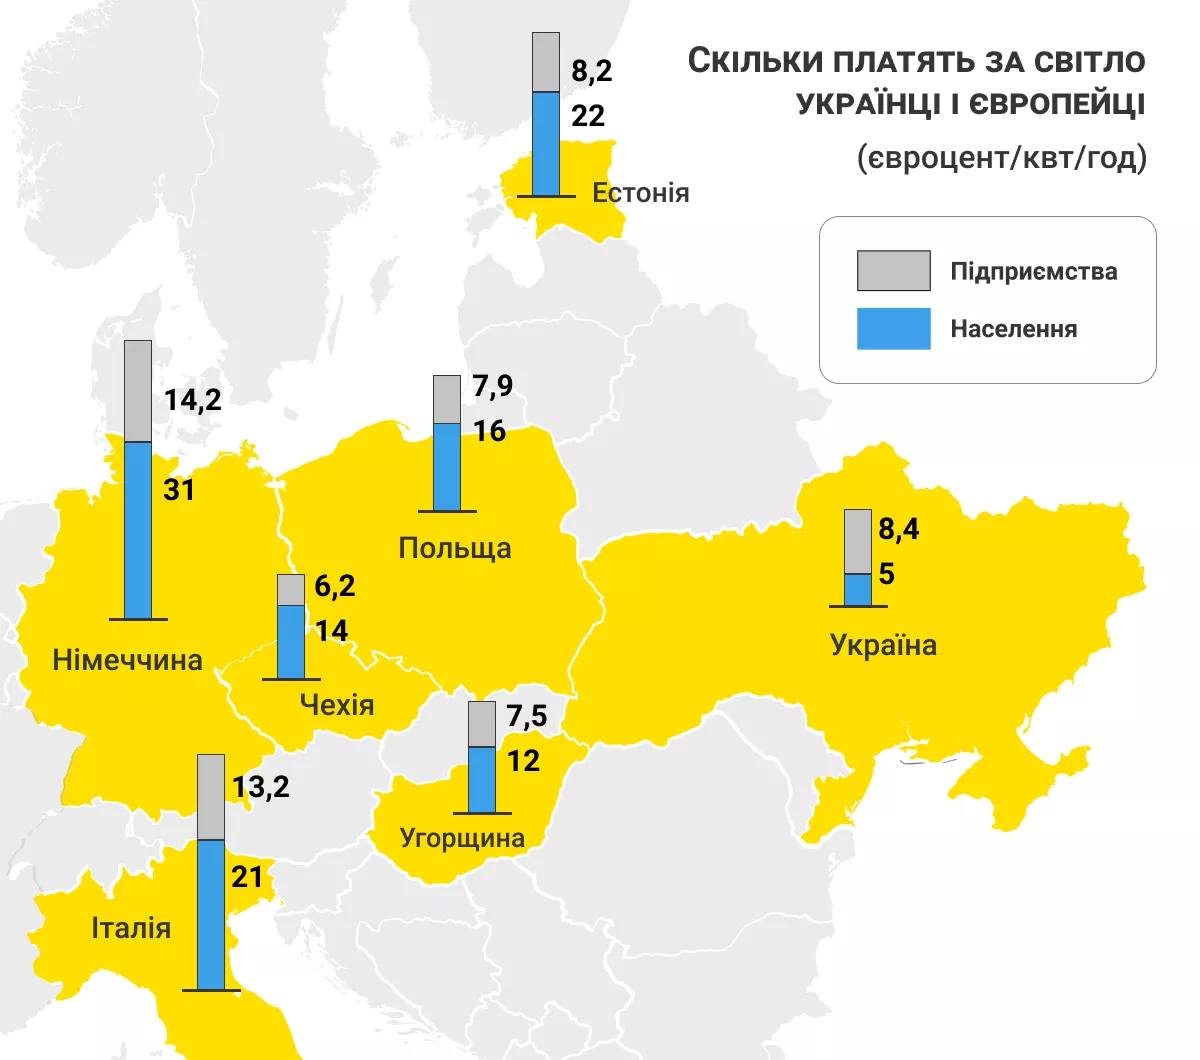 Скільки платять за світло українці і європейці (євроцент/кВт/год)